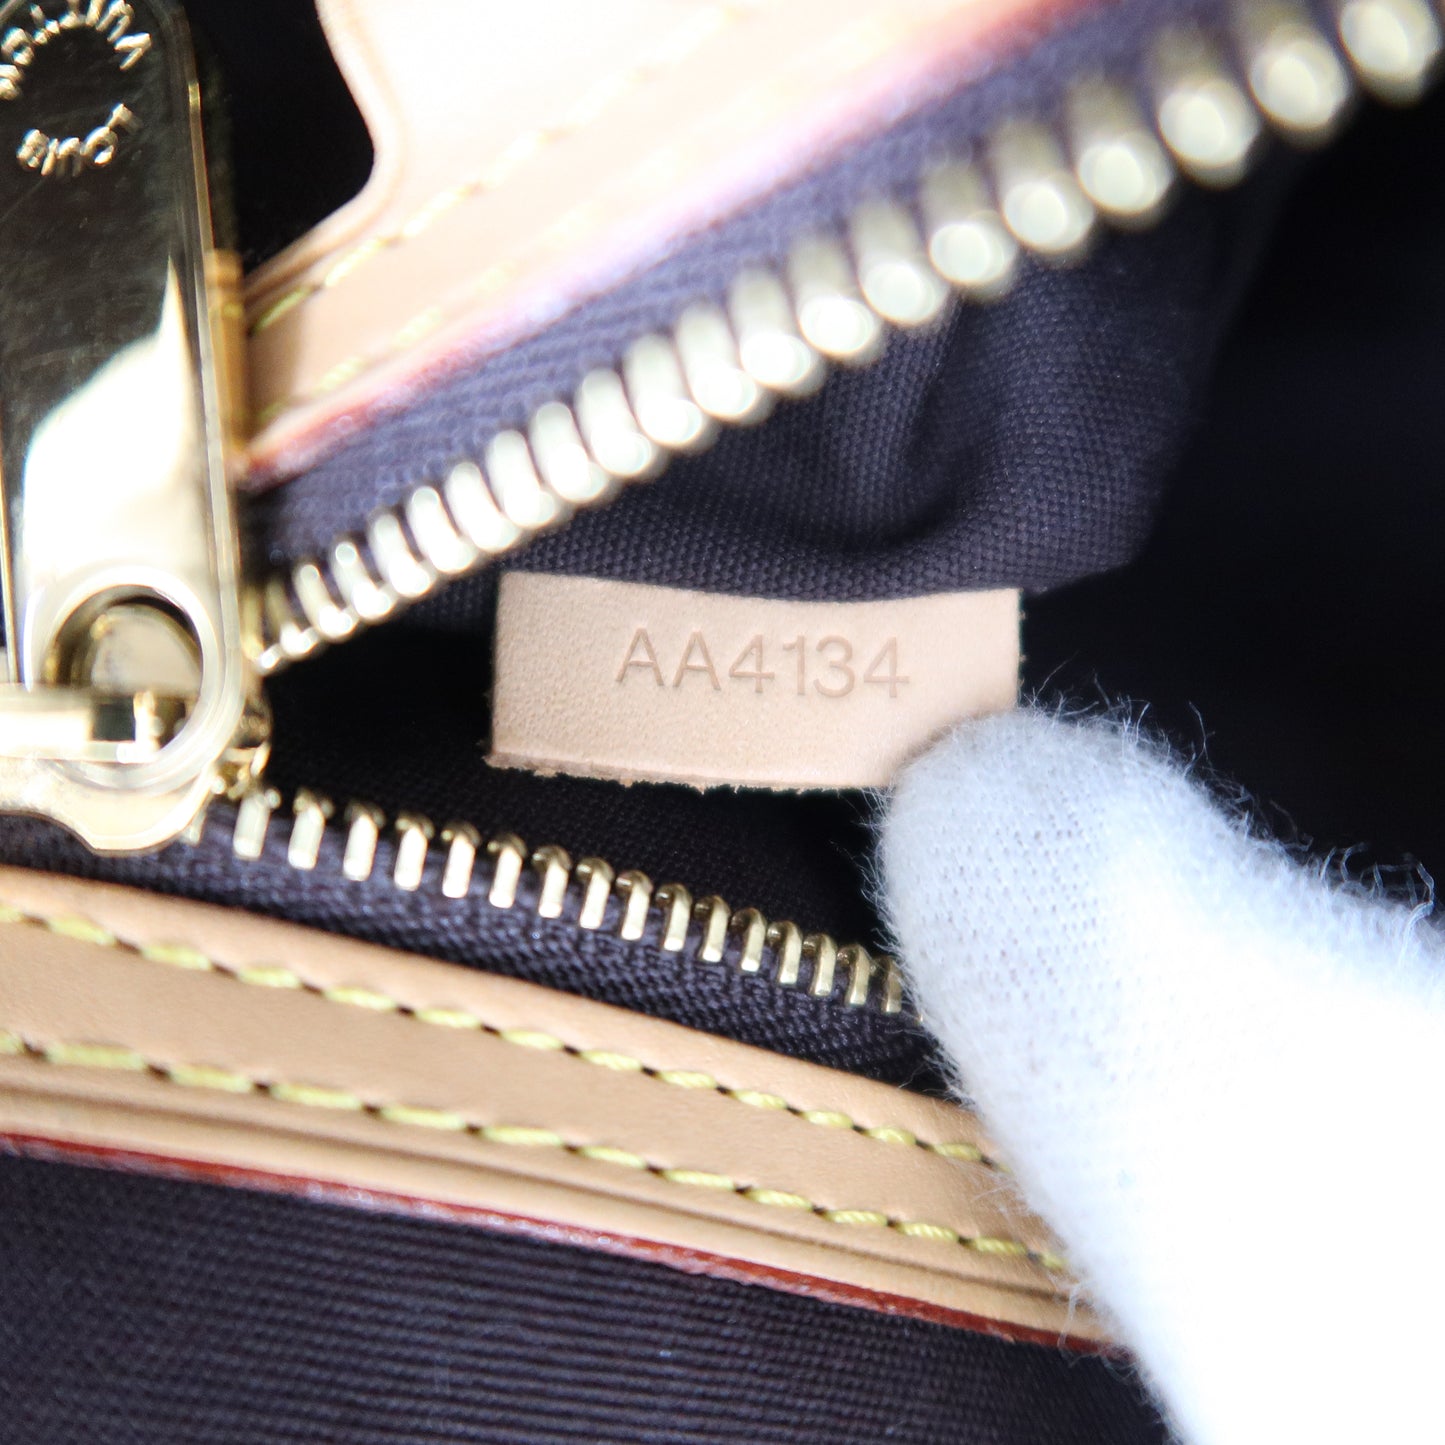 Louis Vuitton Vernis Brea MM 2Way Hand Bag Amarante M91619